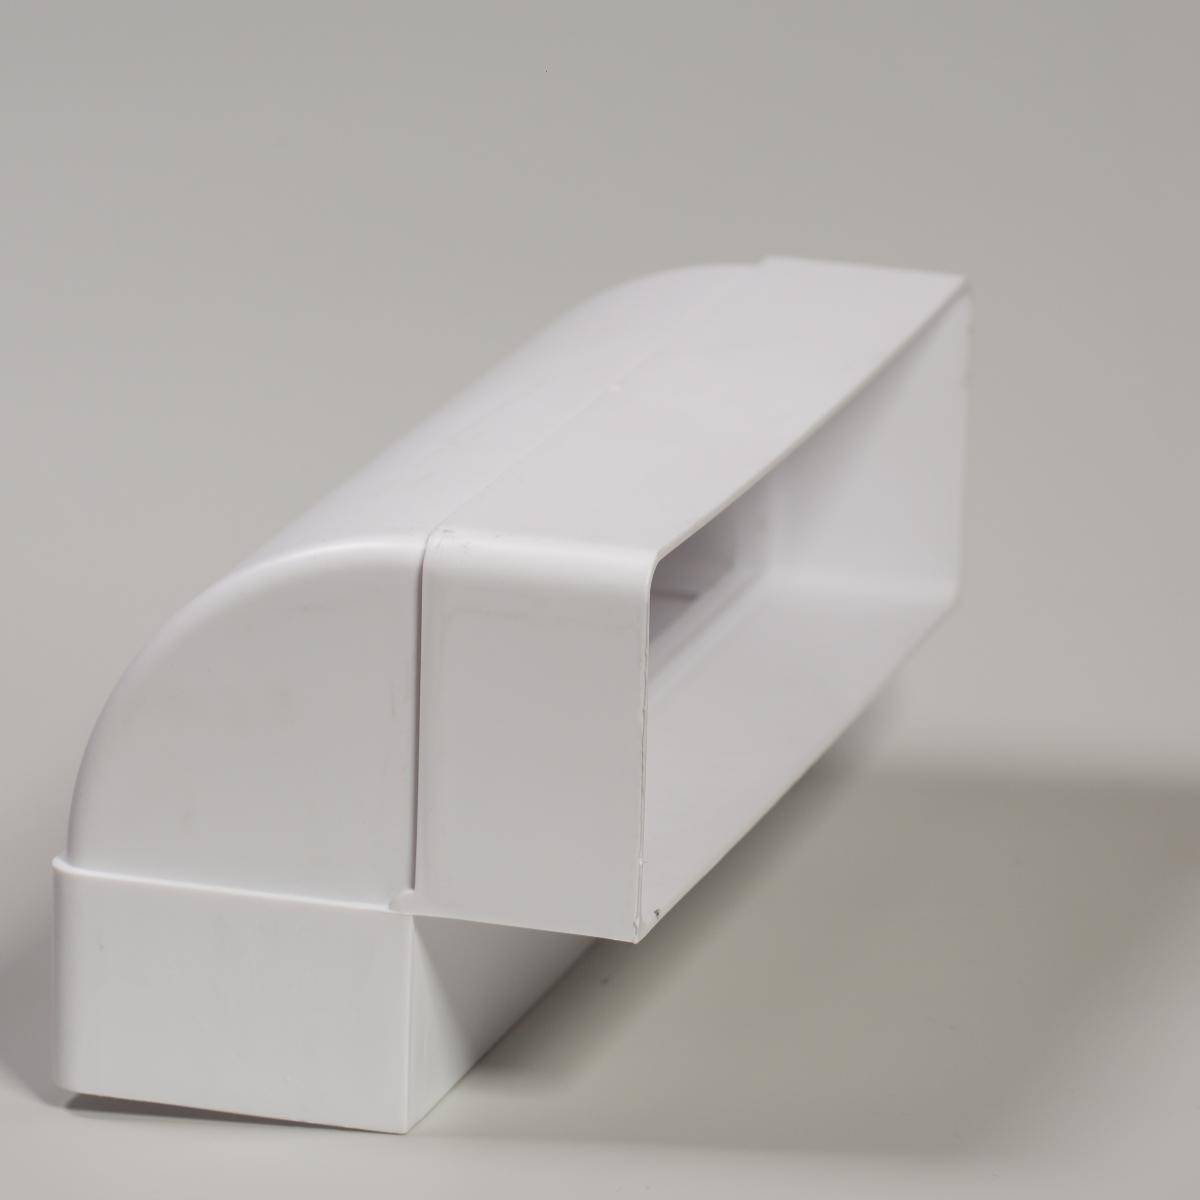 Пластиковый короб для вытяжки (вентиляции) прямоугольный: преимущества, размеры, монтаж